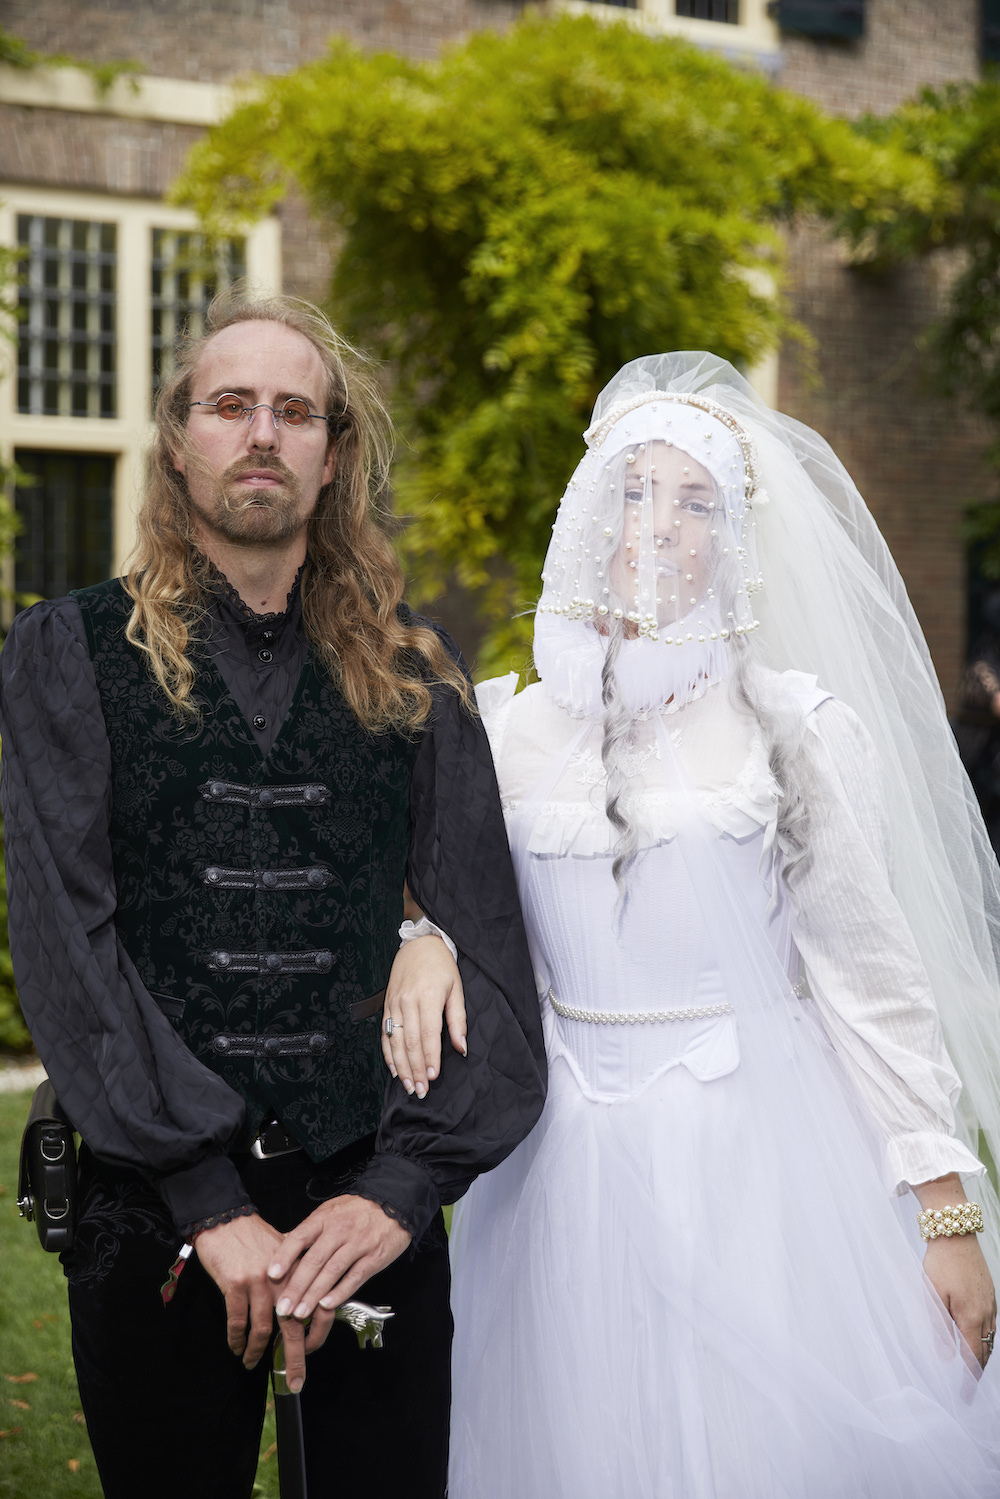 Ein Mann in einem schwarzen viktorianischen Outfit mit Gehstock und eine Frau in einem weißen Tüllkleid mit Gesichtsschleier